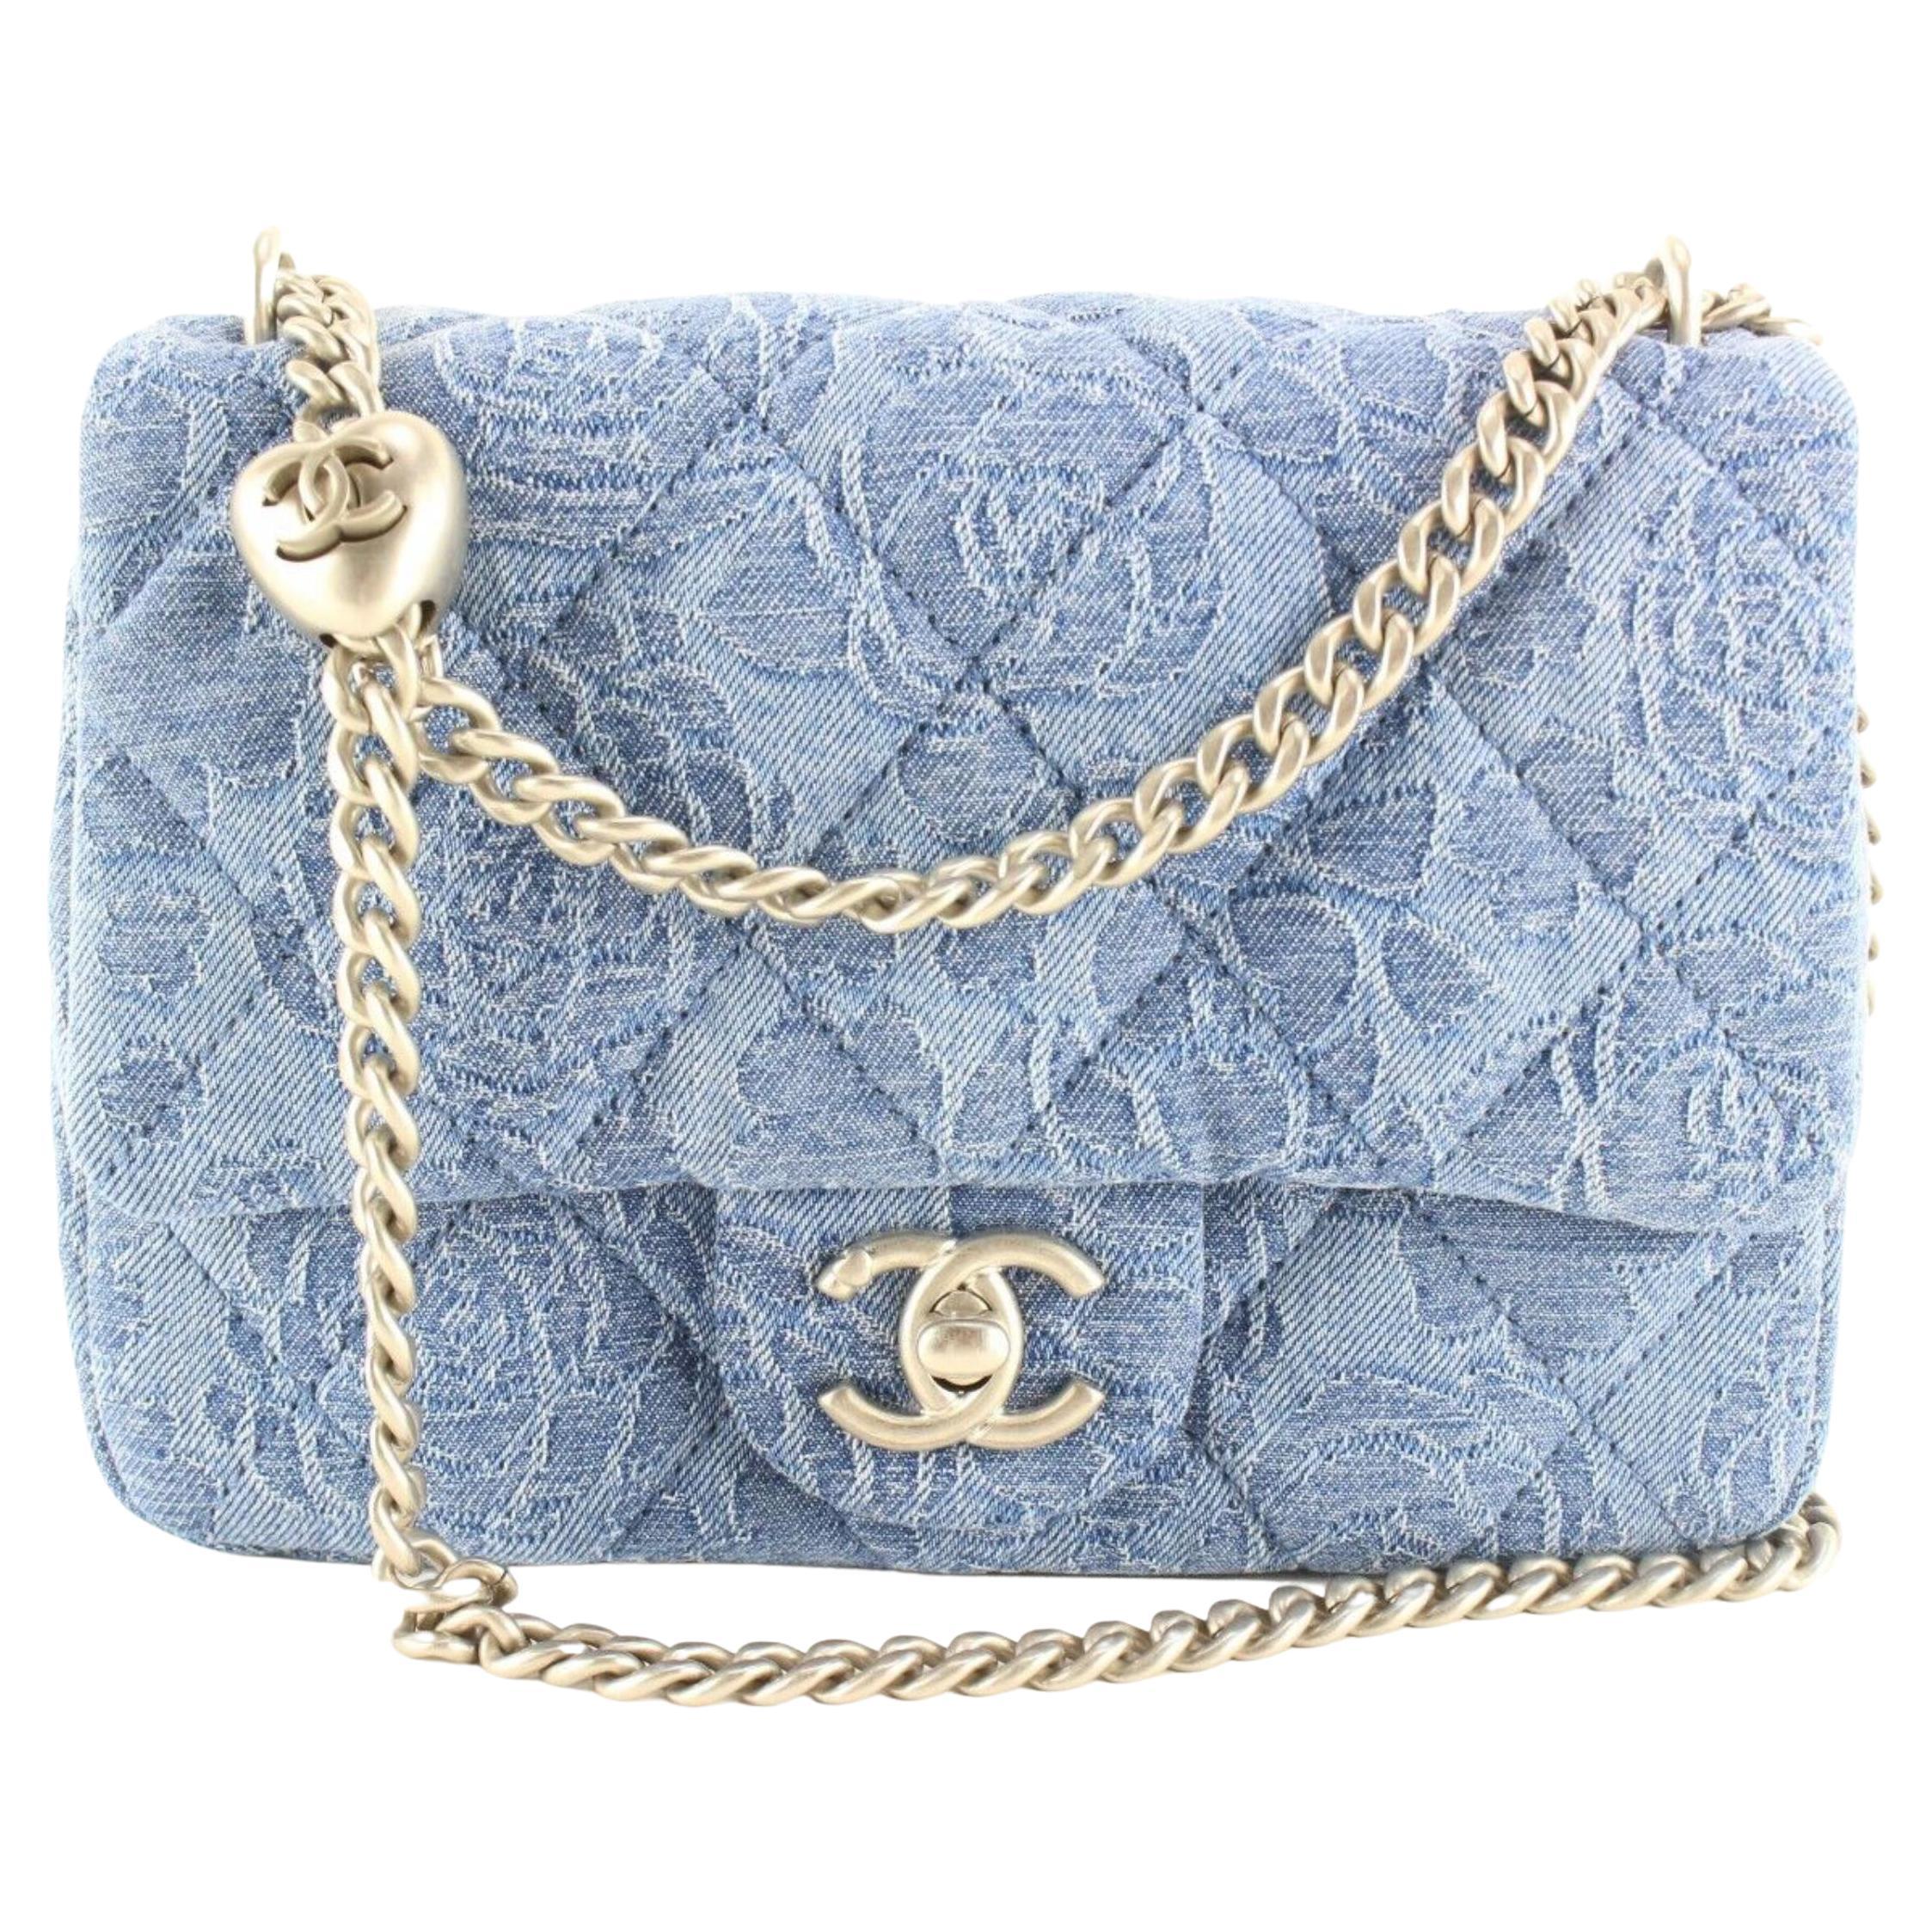 Chanel Denim Camellia Flap Bag - For Sale on 1stDibs  chanel camellia flap  bag, chanel camellia bag, chanel camellia crush bag